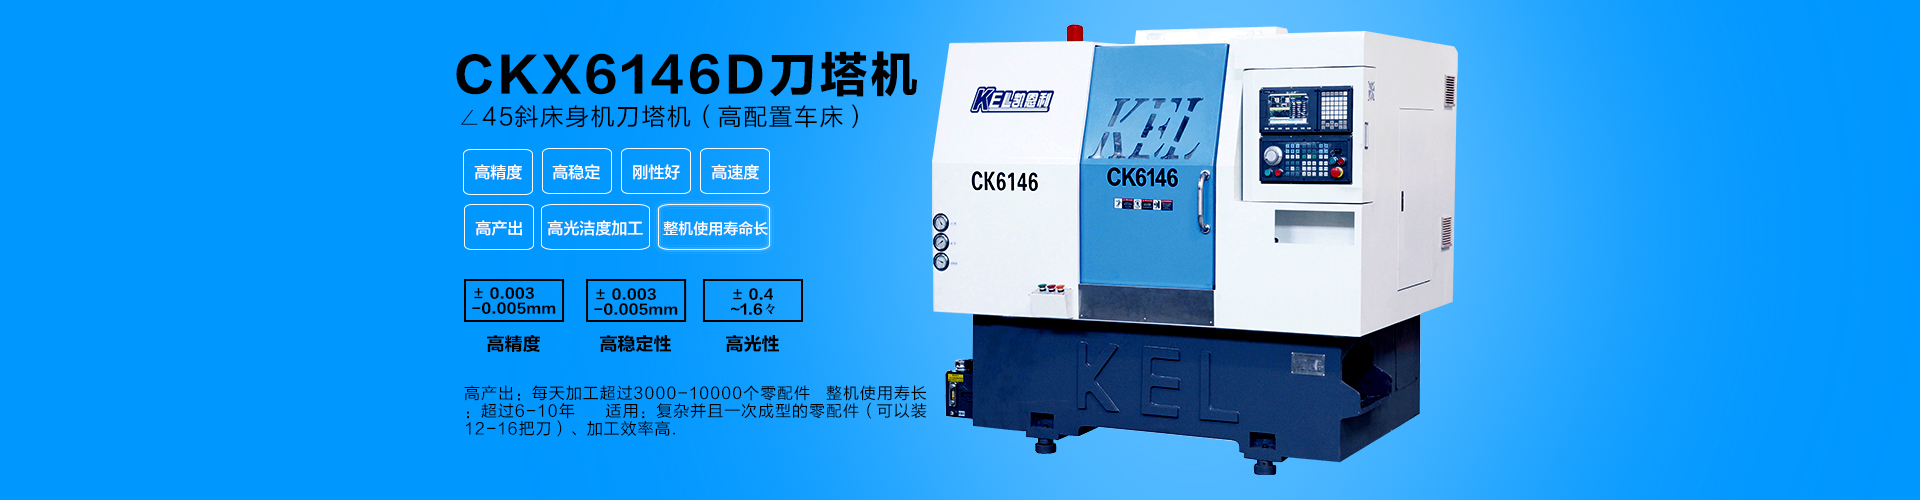 所订机型： CKX6146C (46标准排刀机）∠45斜床身高配置数控车床 数量1台机（新客户加机）